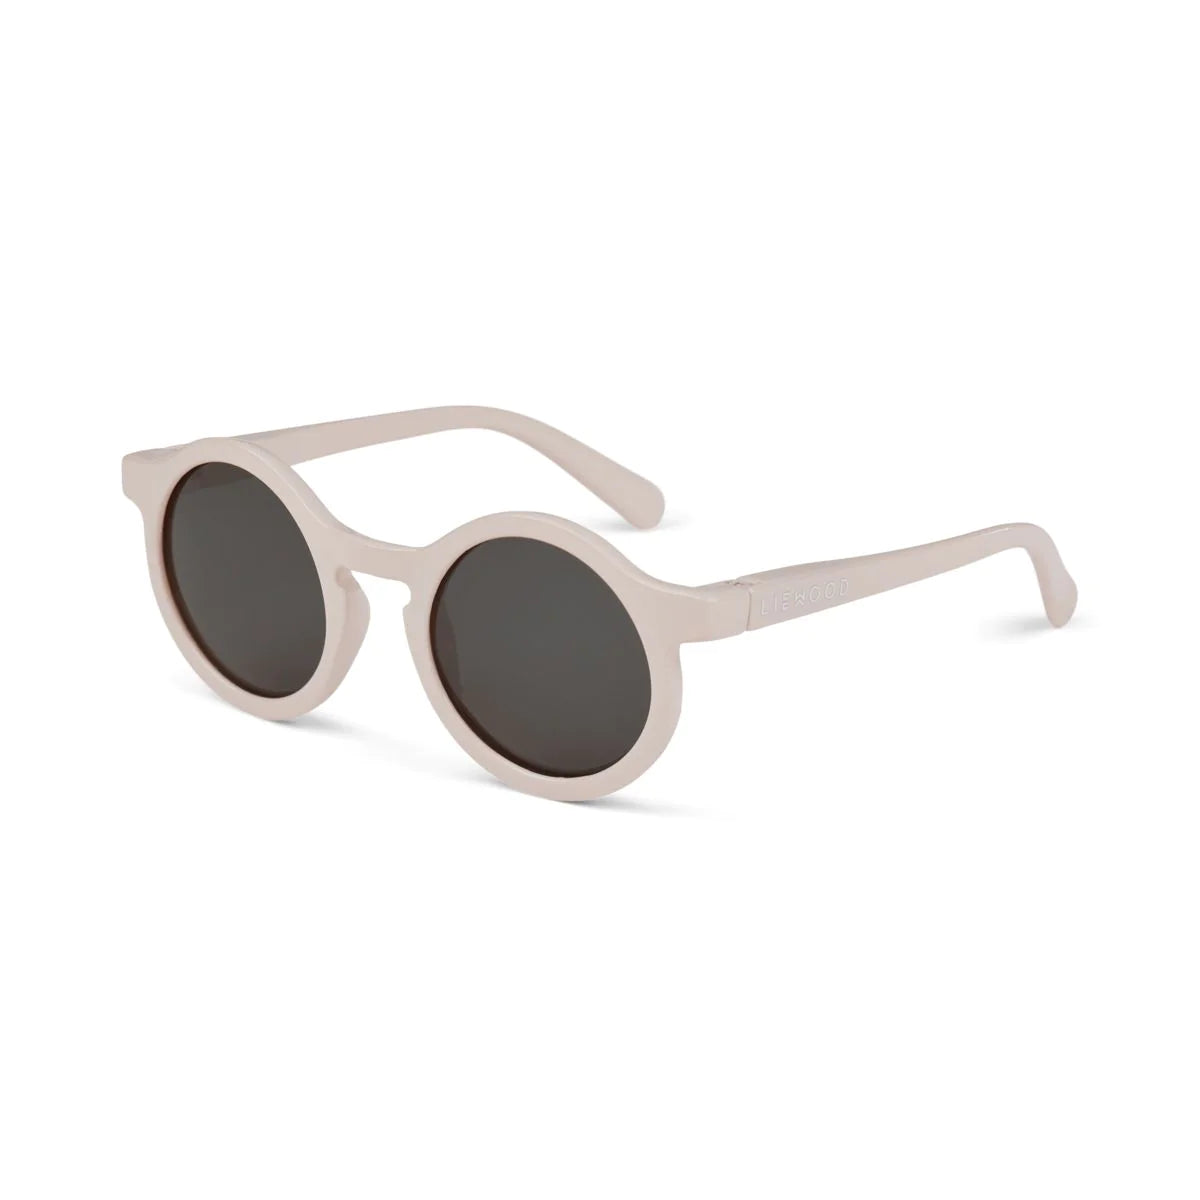 Darla sunglasses (4-10Y)